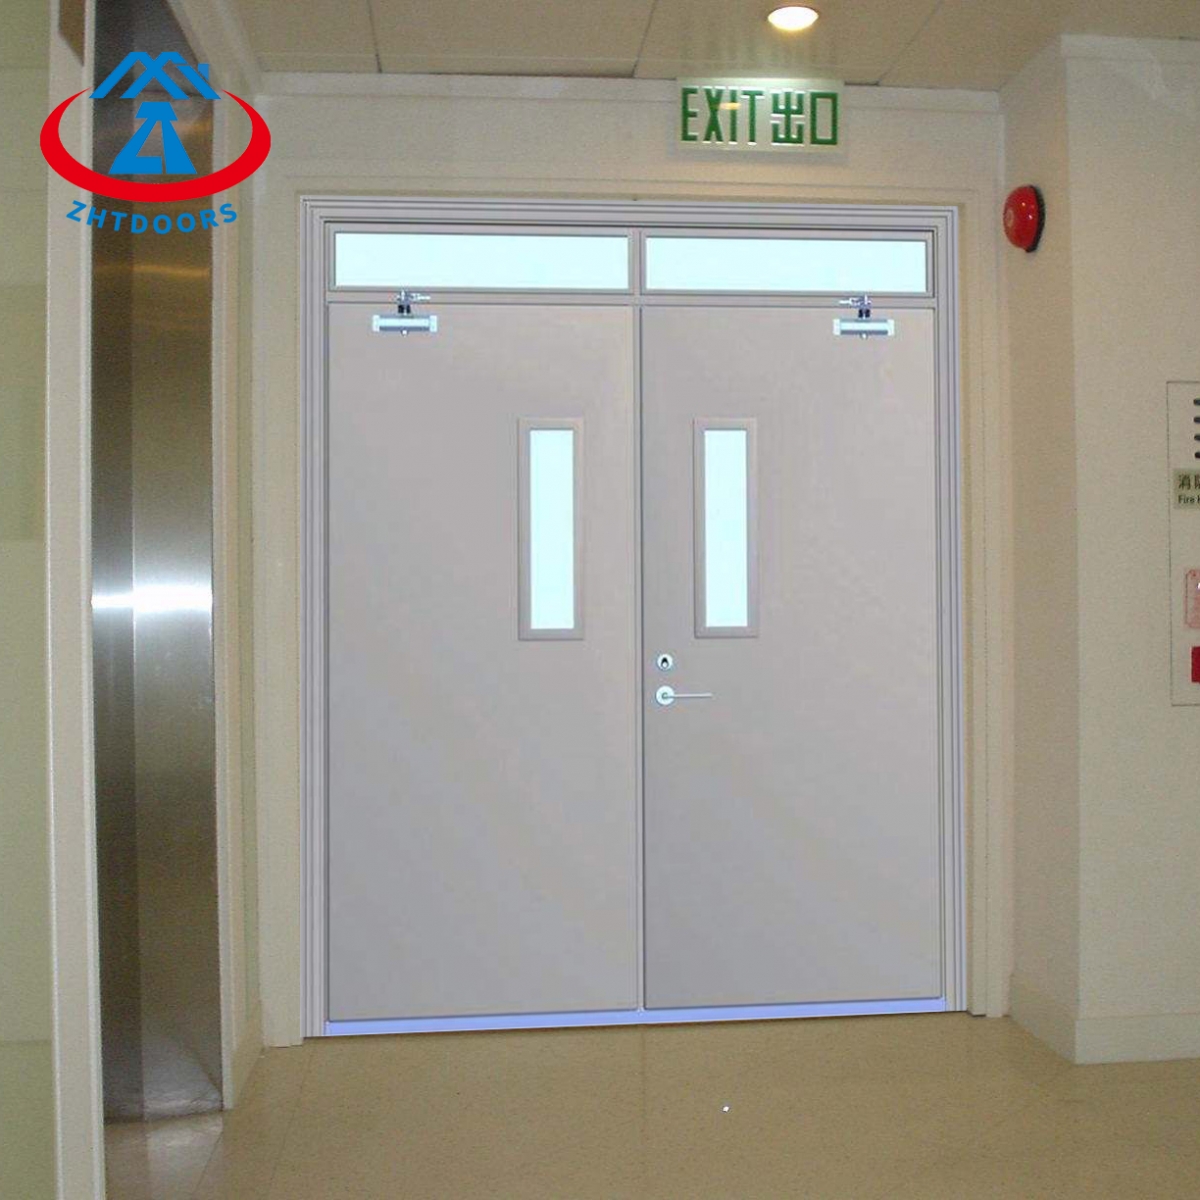 Fd30 Fire Doors 1 Piece-ZTFIRE Door- Fire Door, Fireproof Door, Fire rated Door, Fire Resistant Door, Steel Door, Metal Door, Exit Door